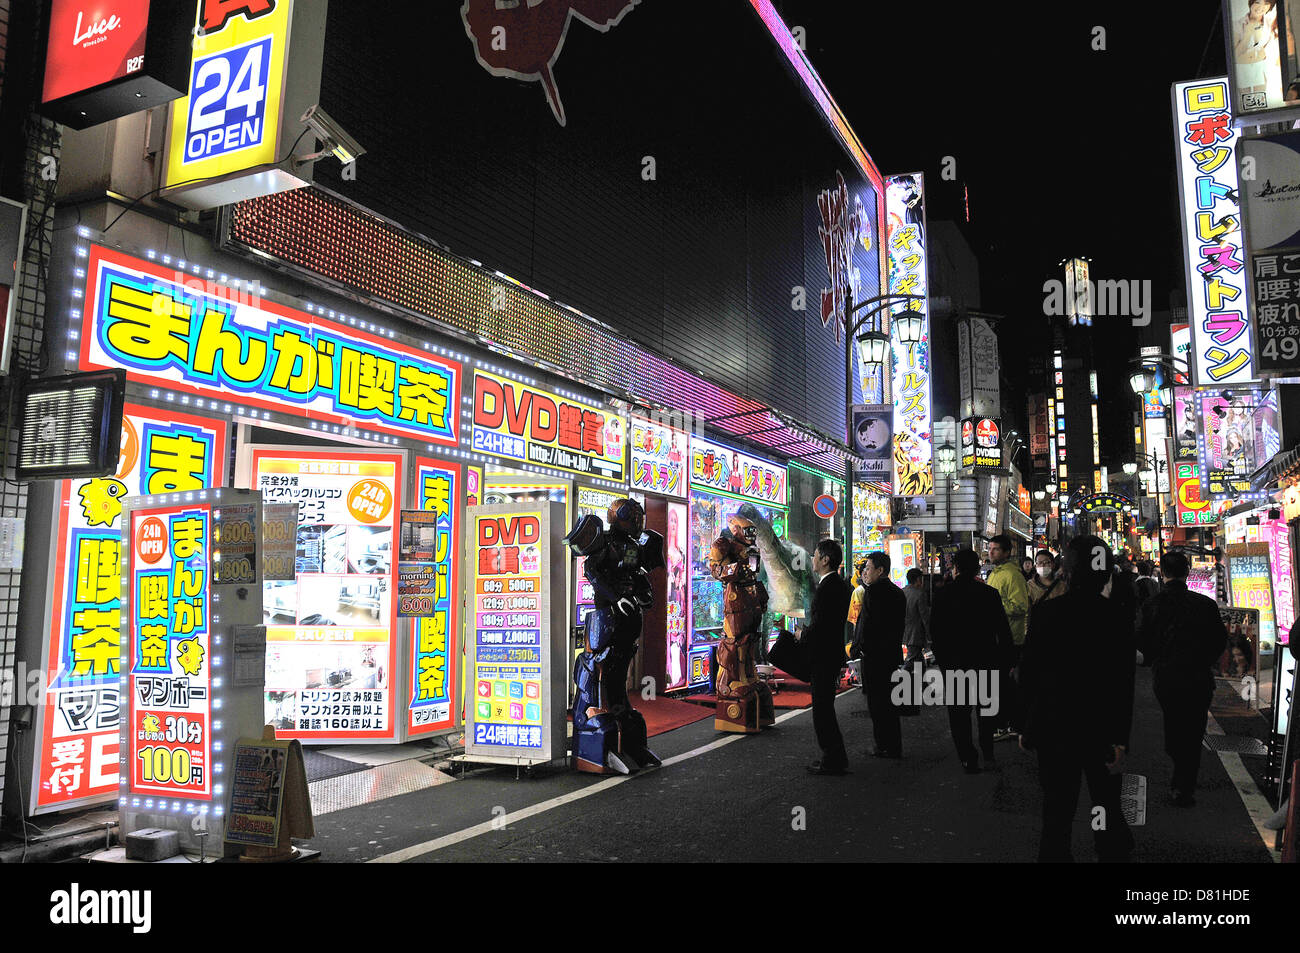 Scène de rue de nuit Shinjuku Tokyo Japon Asie Banque D'Images